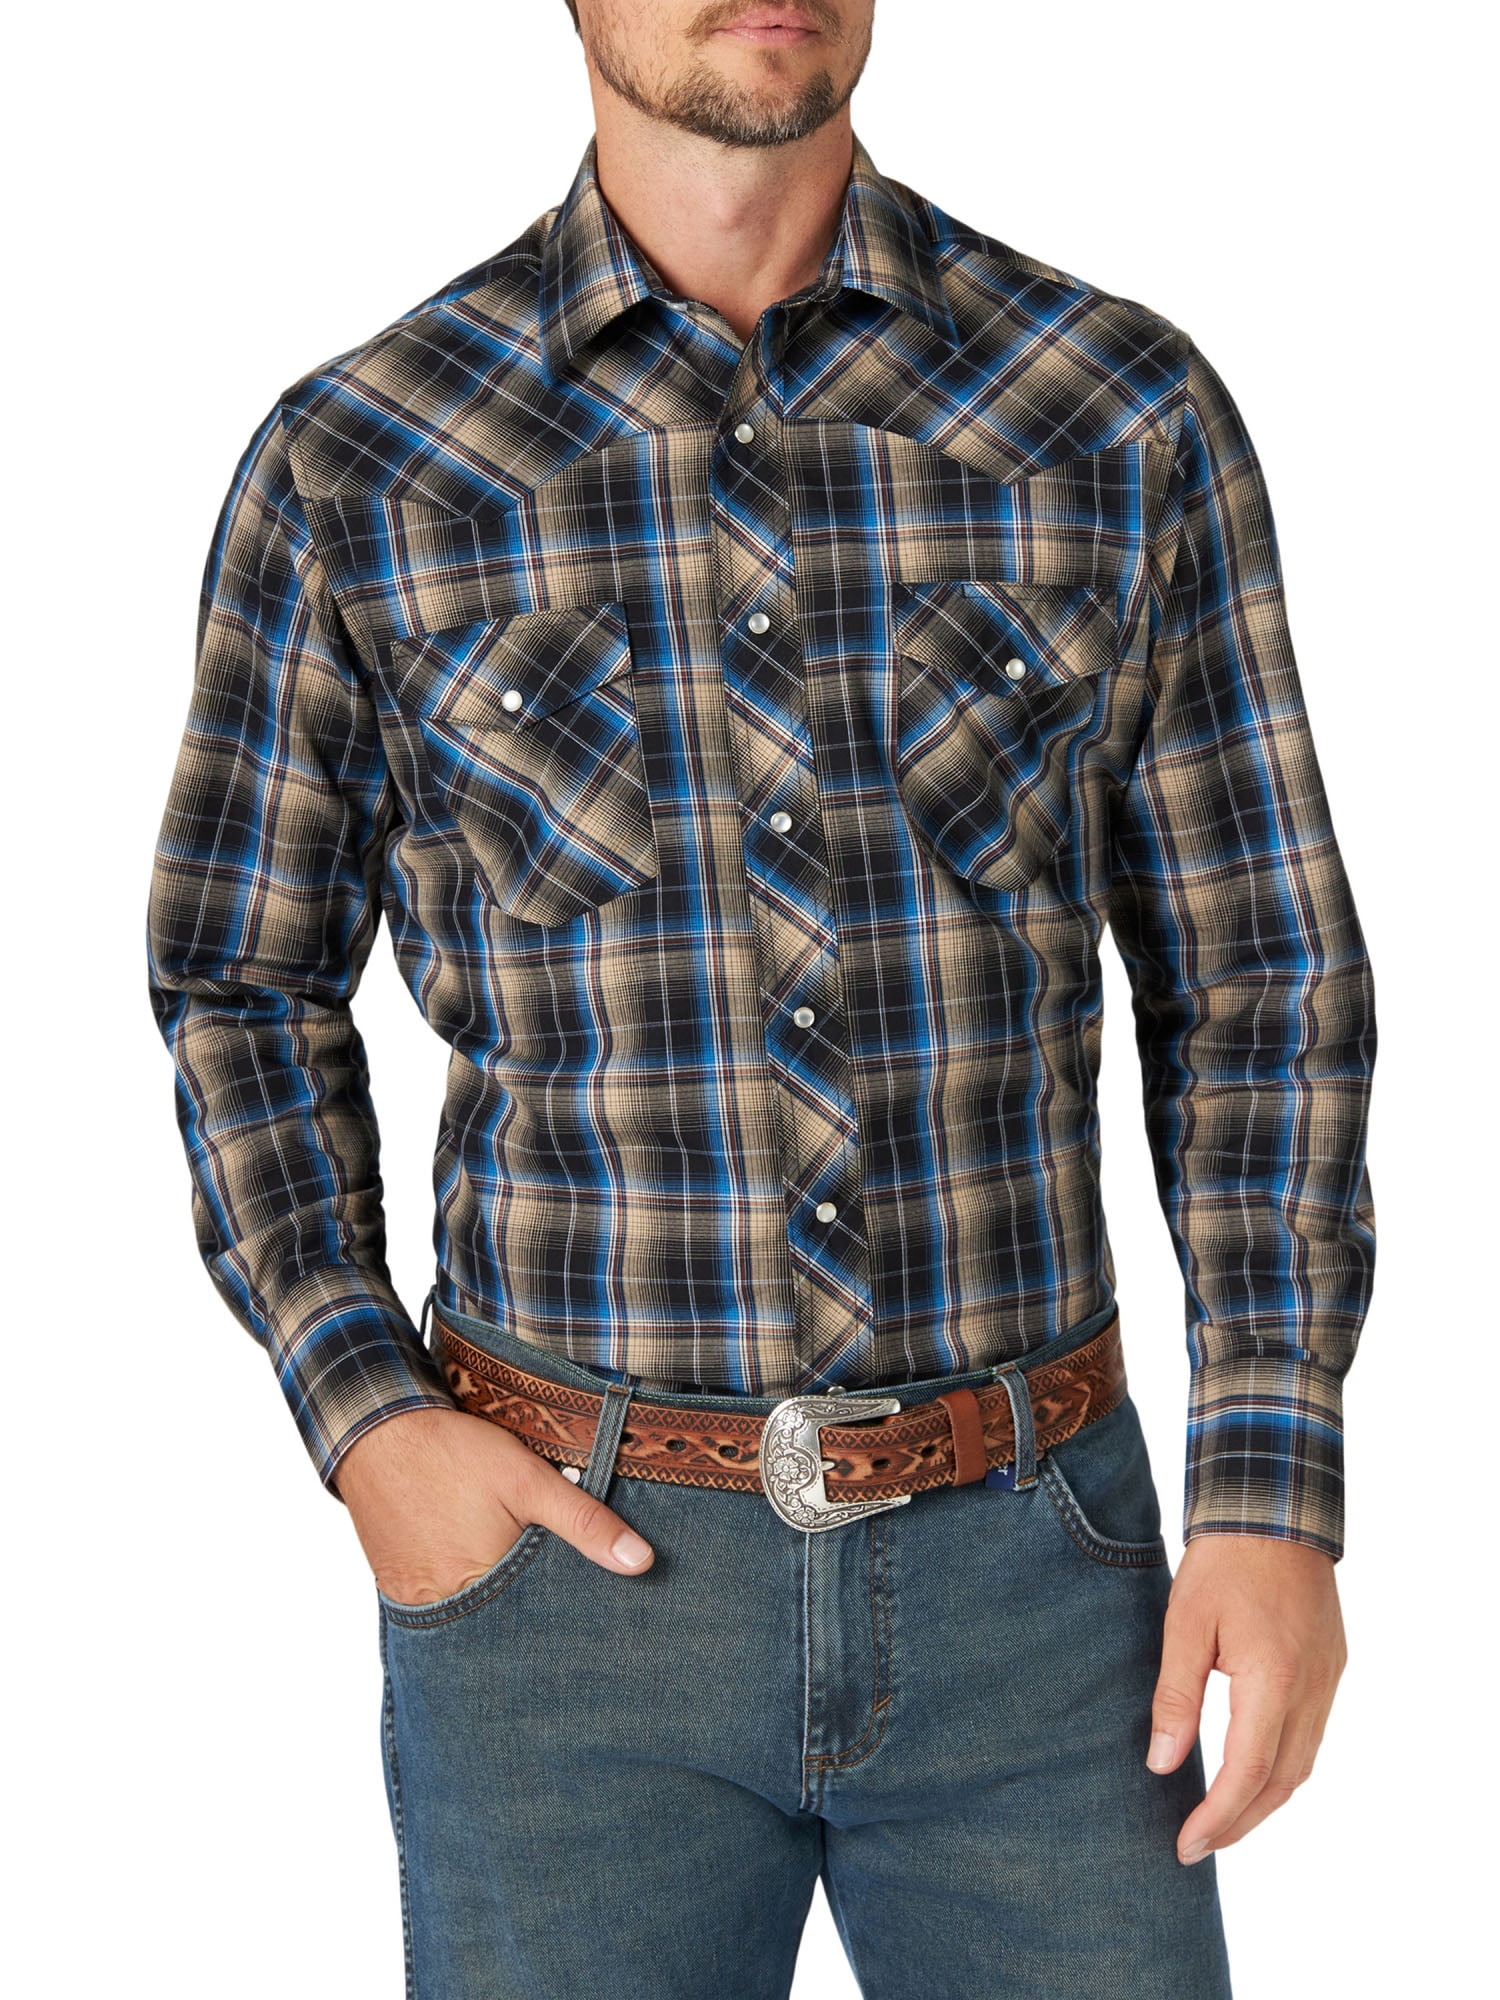 Wrangler - Wrangler Men's Long Sleeve Western Shirt - Walmart.com ...